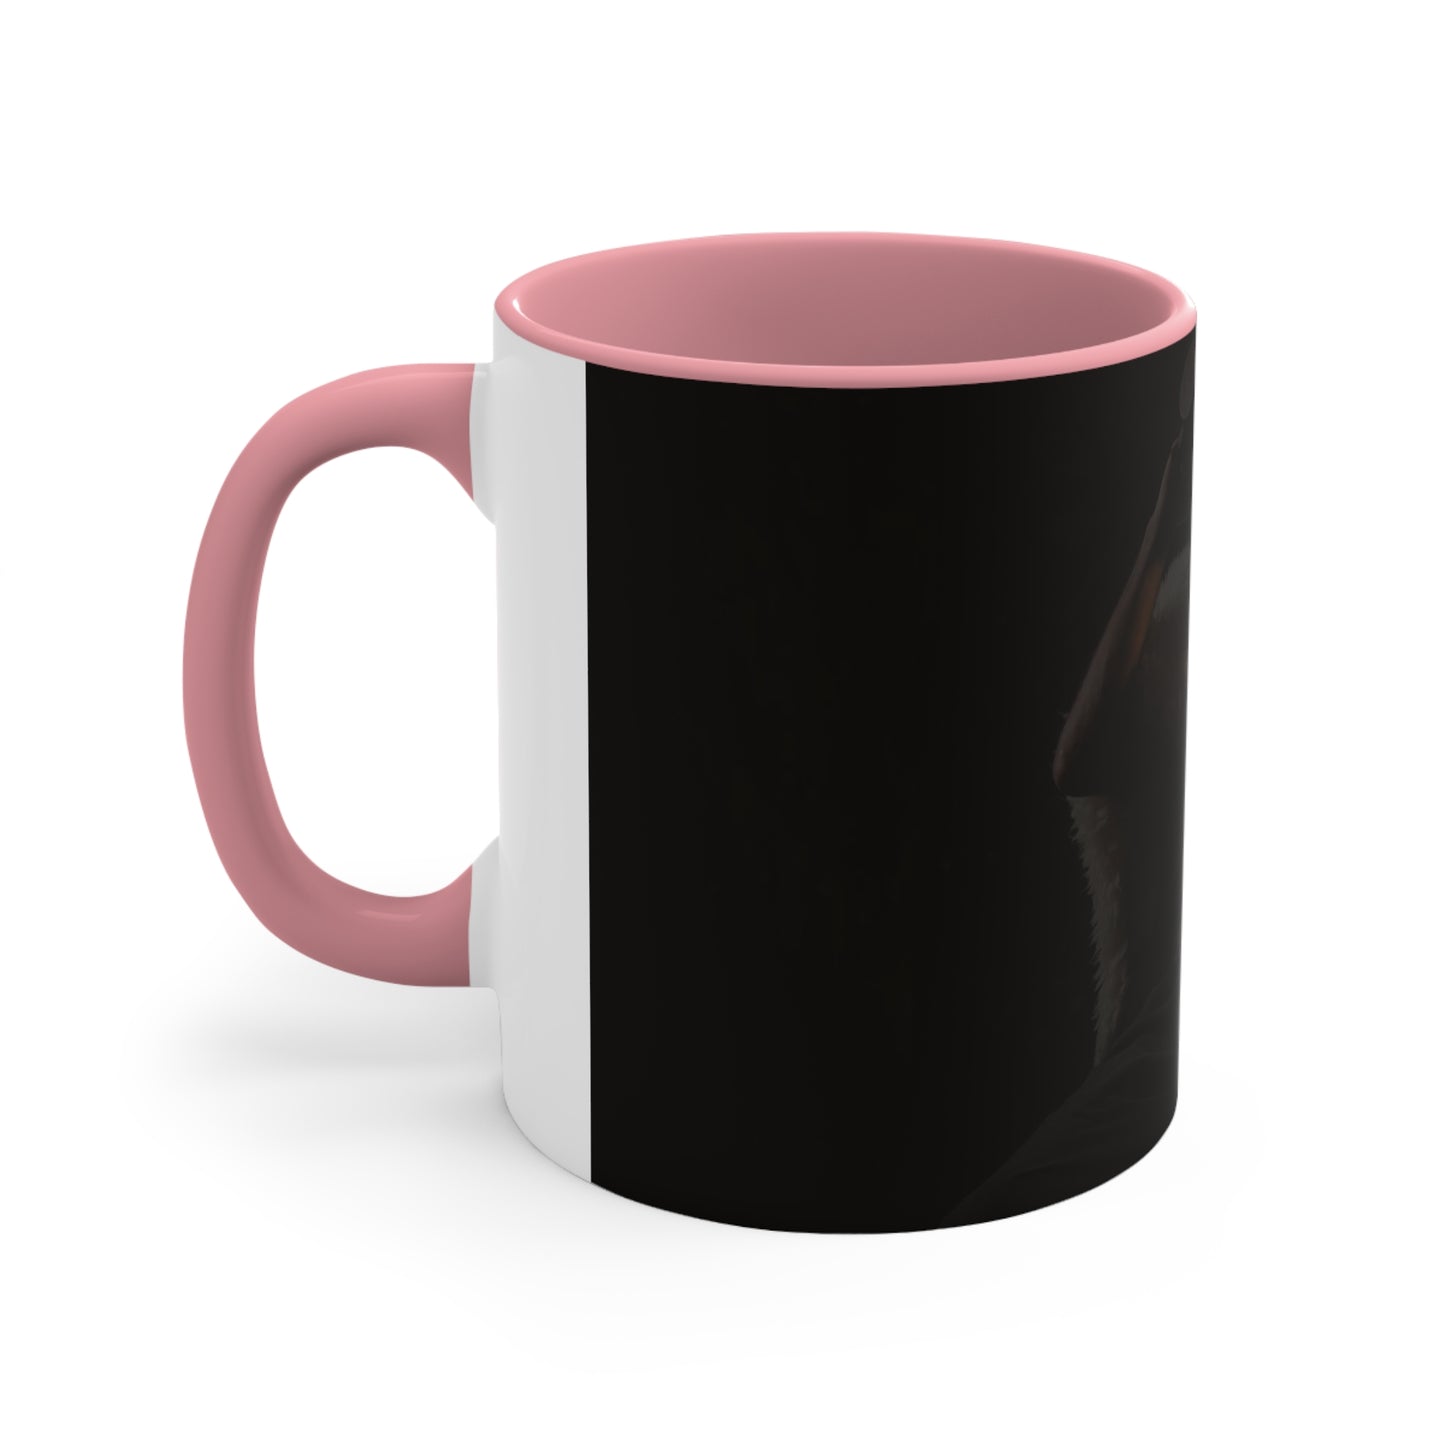 Accent TripleViking Coffee Mug, 11oz